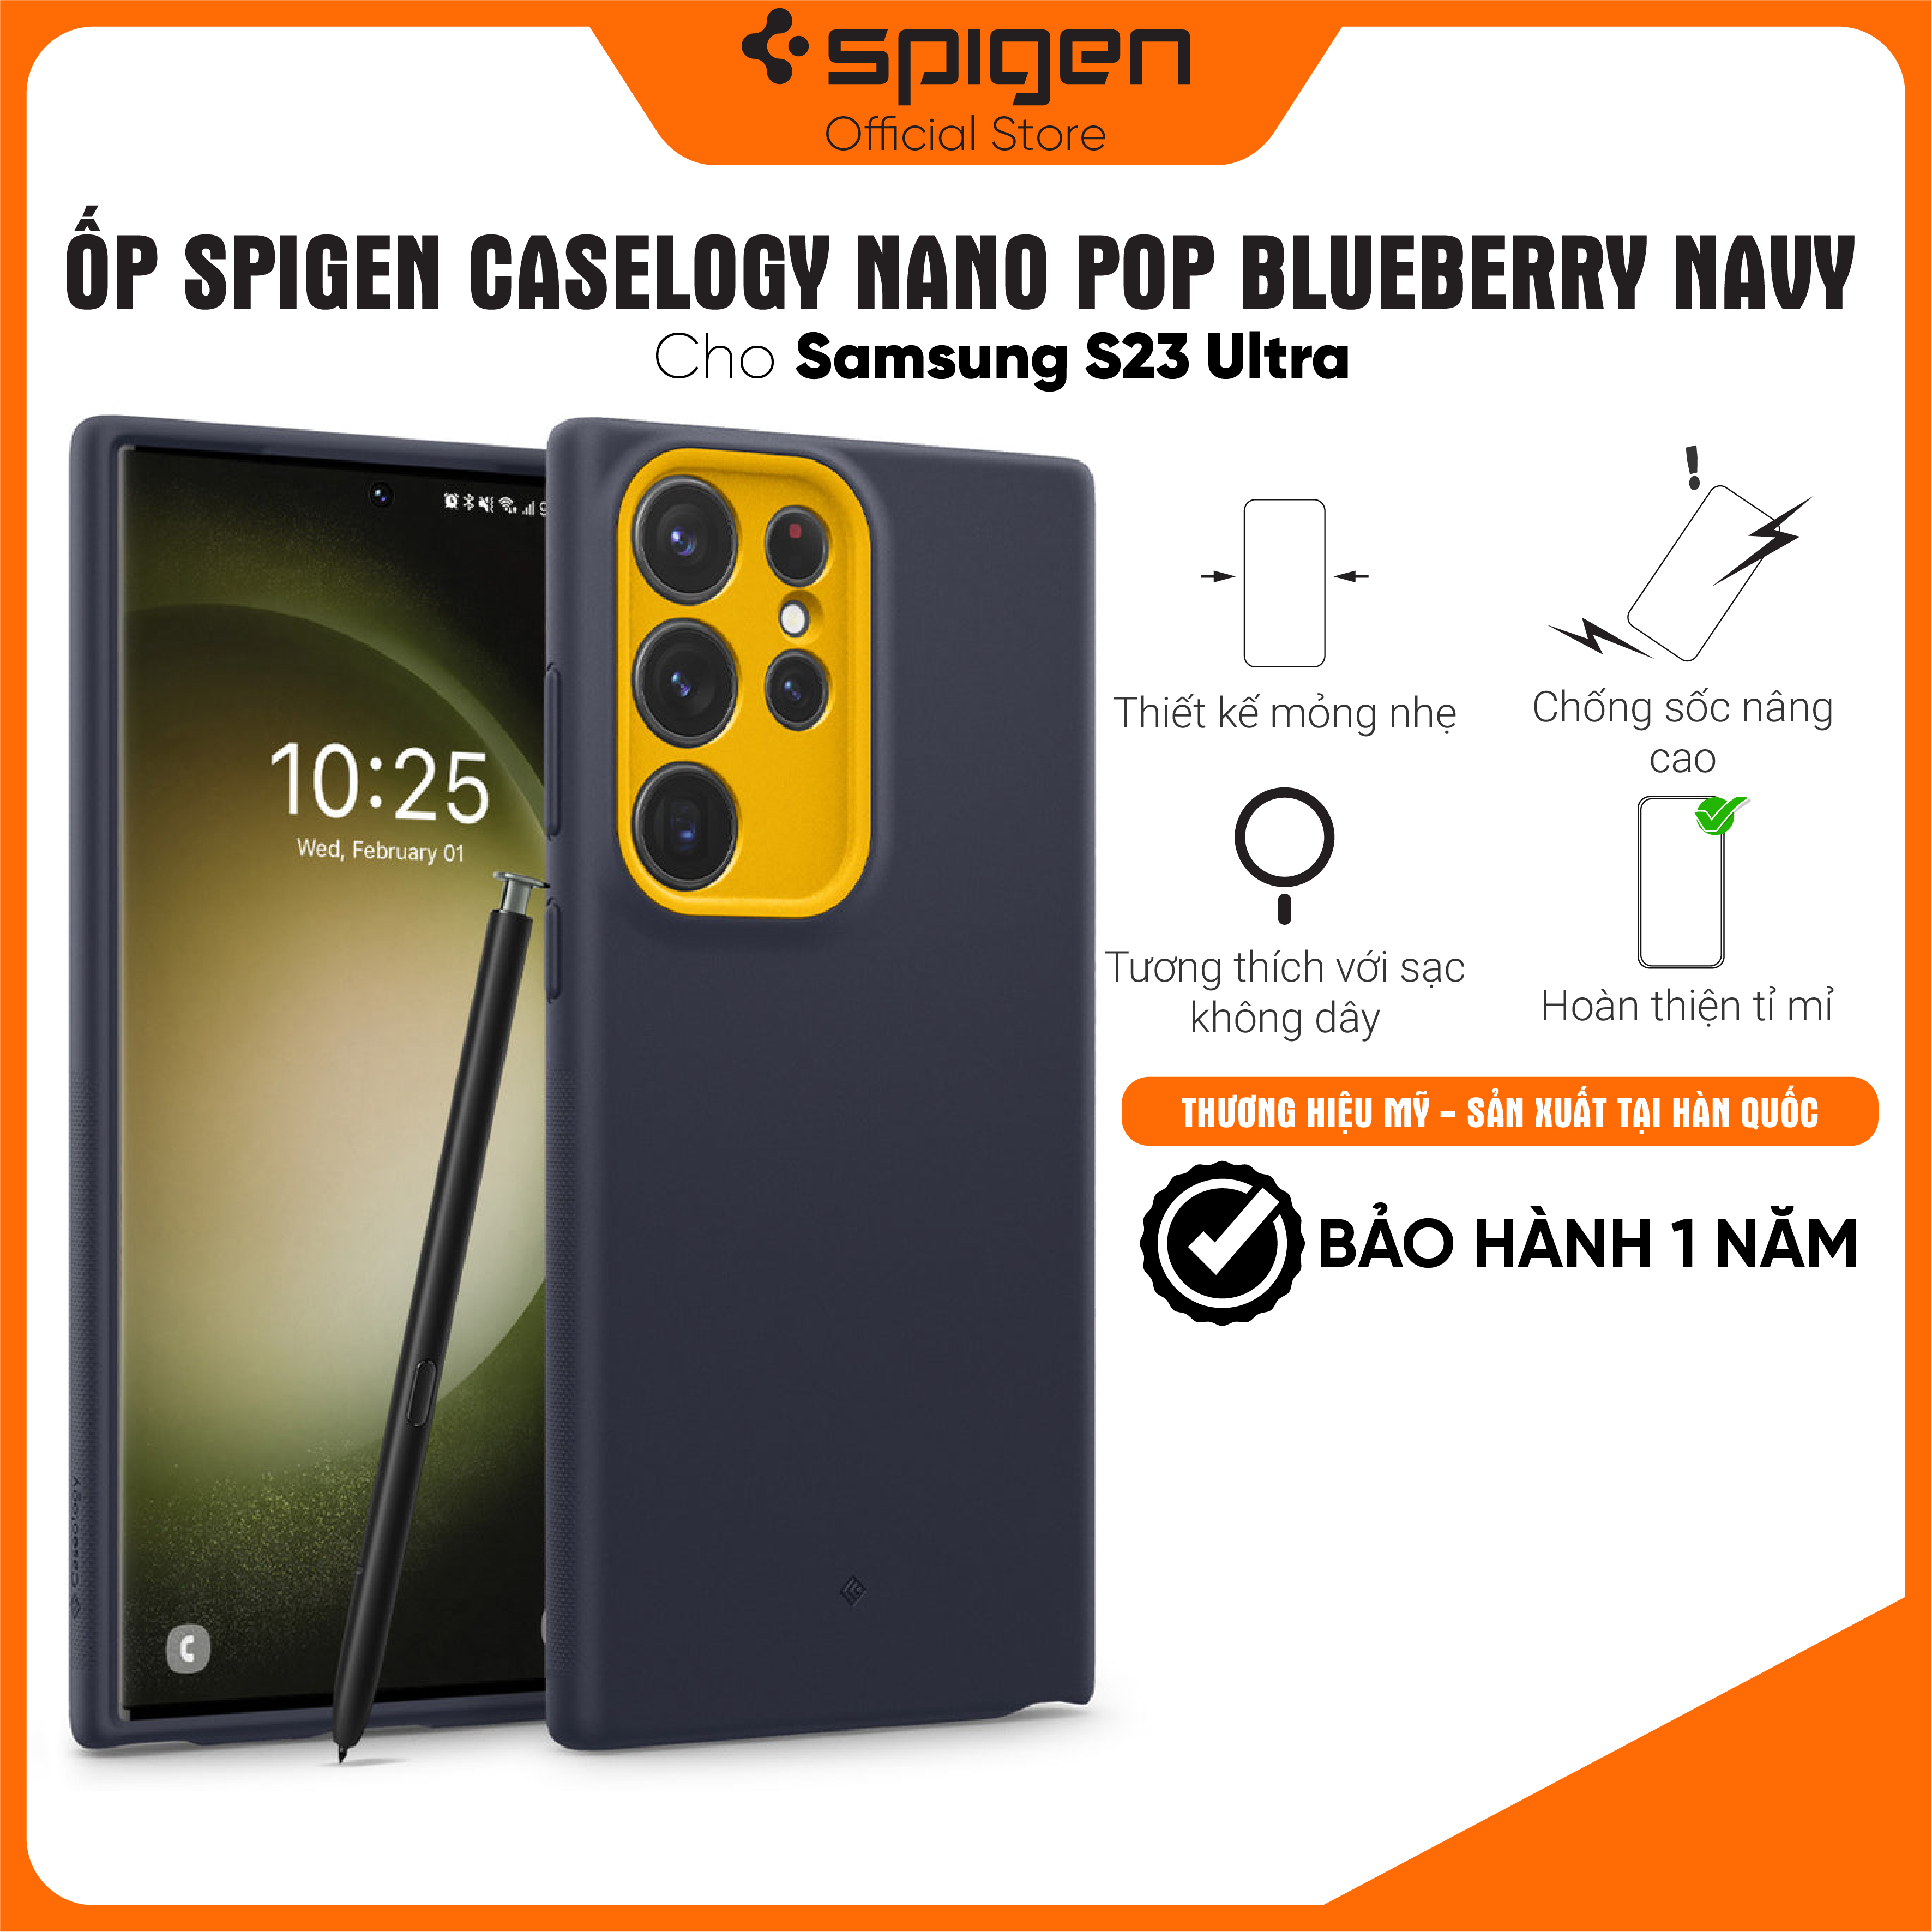 Hình ảnh Ốp lưng Spigen Caselogy Nano Pop cho Samsung Galaxy S23 Ultra - Thiết kế mòng nhẹ, chống sốc, chống bẩn, viền camera cao - Hàng chính hãng